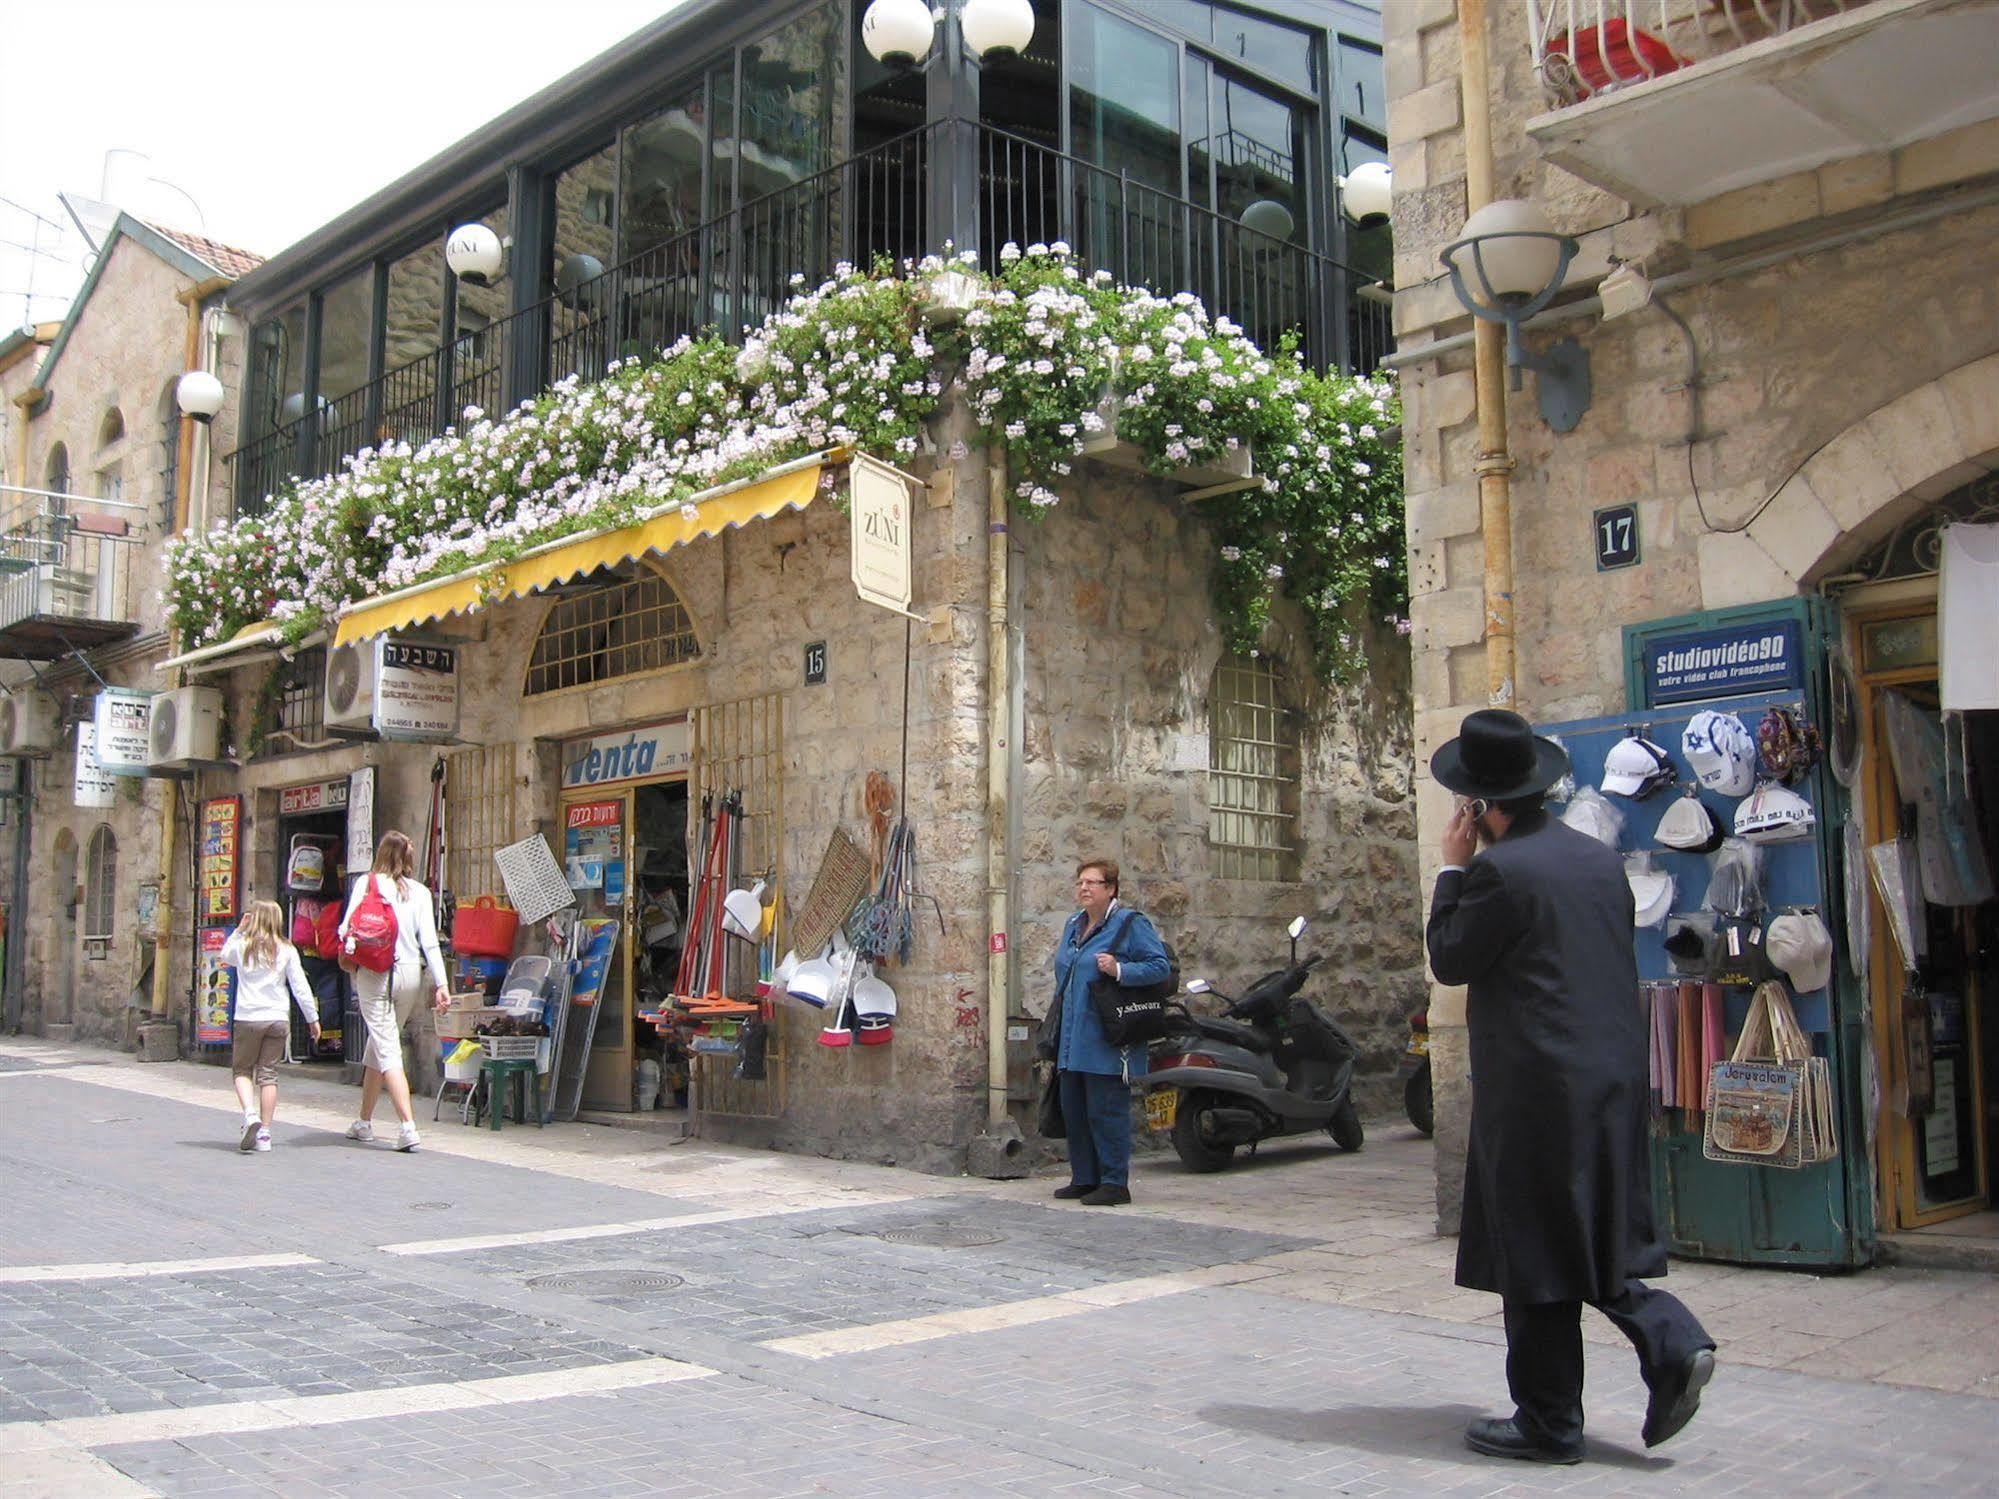 ฮาร์โมนี โฮเทล - แอน แอตลาส บูทิก โฮเทล Hotel เยรูซาเลม ภายนอก รูปภาพ